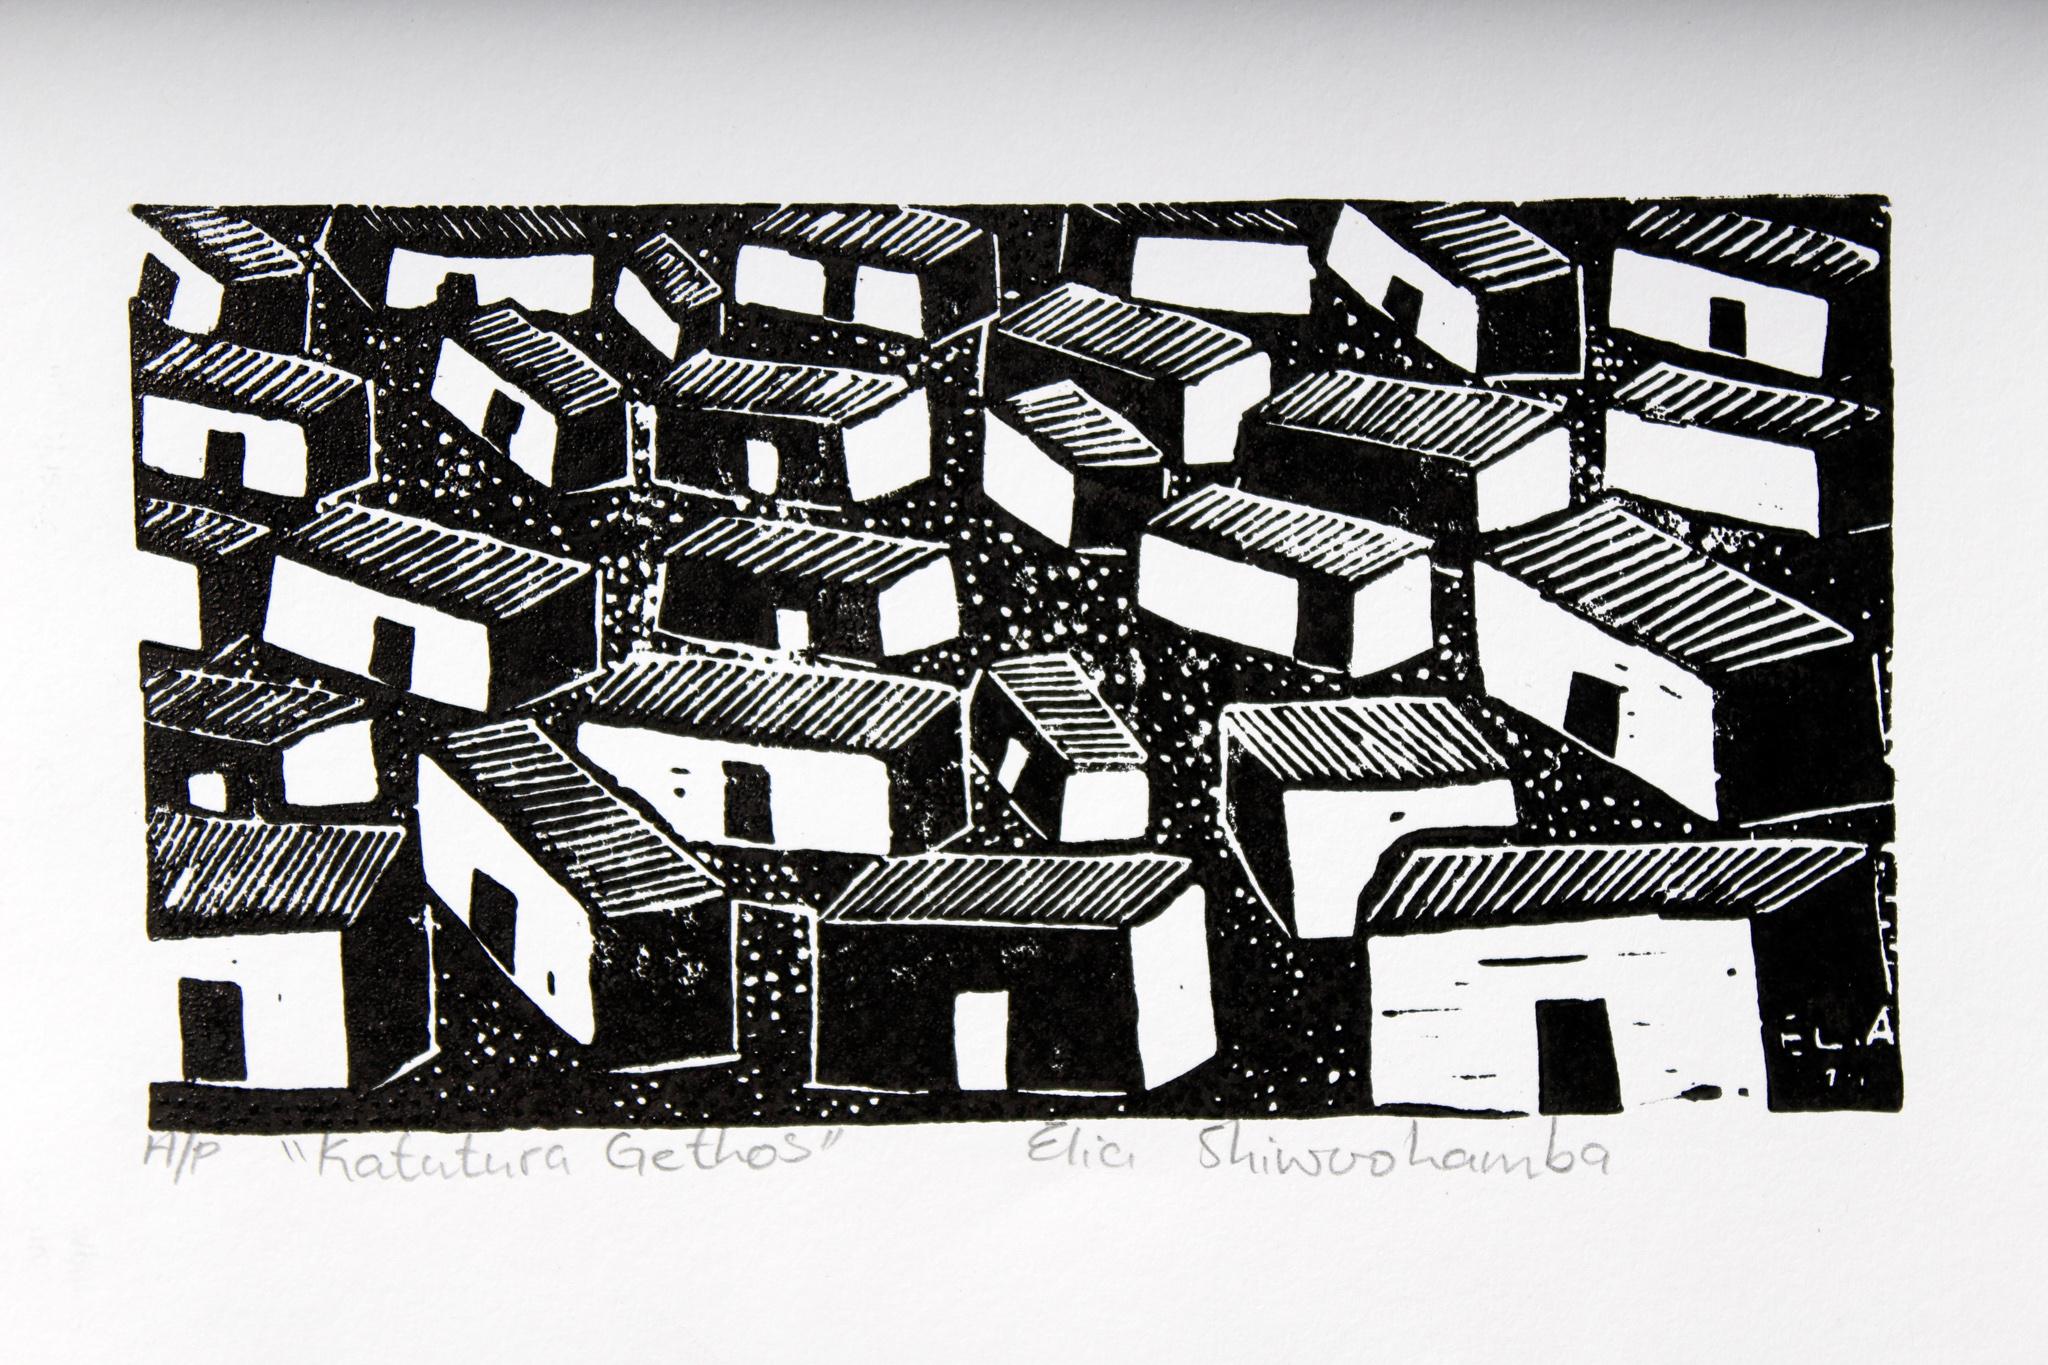 Katutura ghettos, Elia Shiwoohamba, Linoleum block print For Sale 1